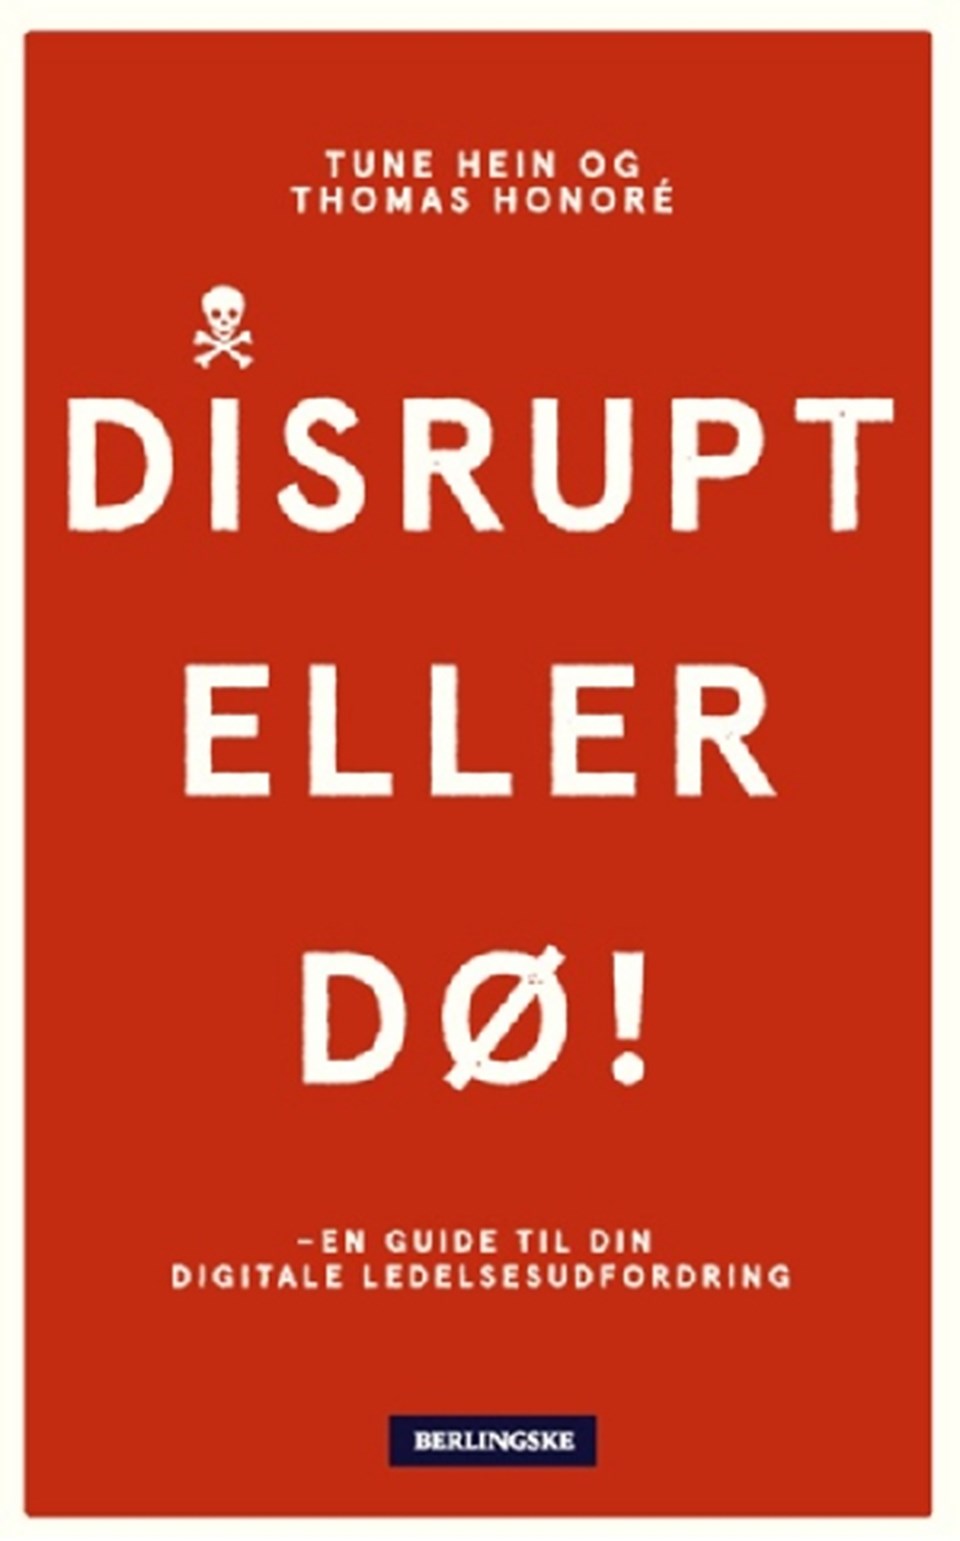 Disrupt - eller dø!